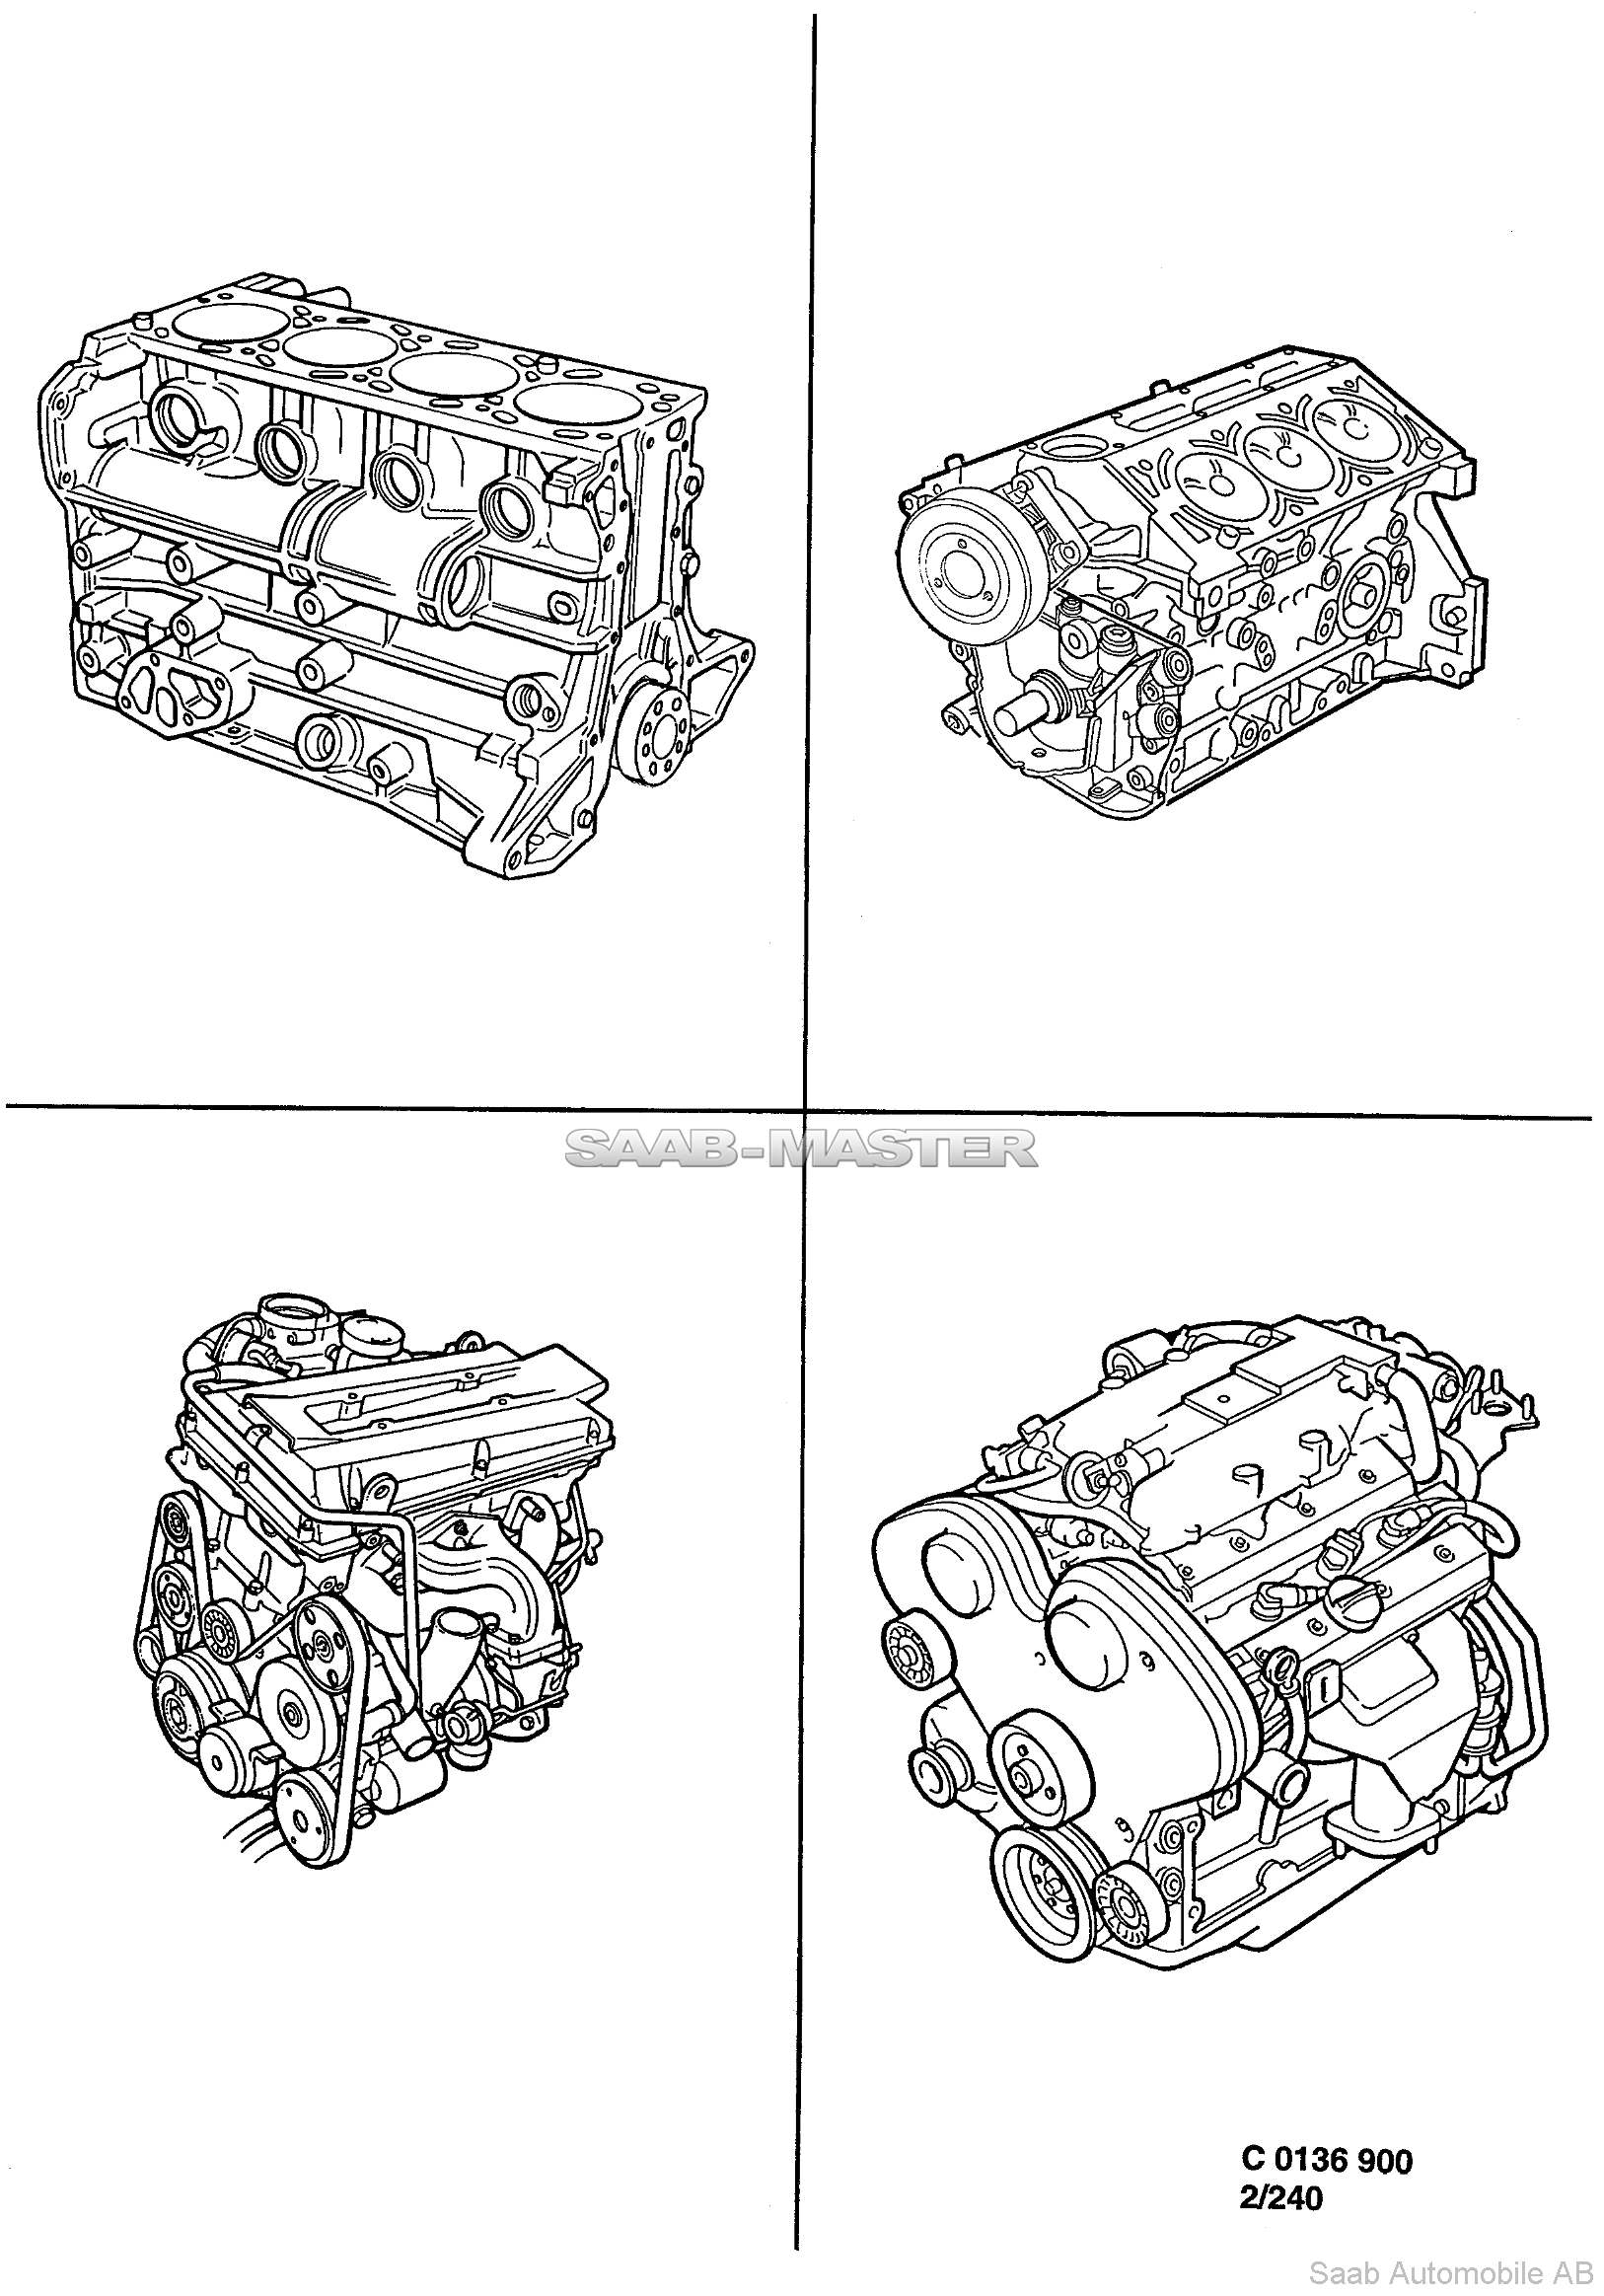 Базовый двигатель - Двигатель